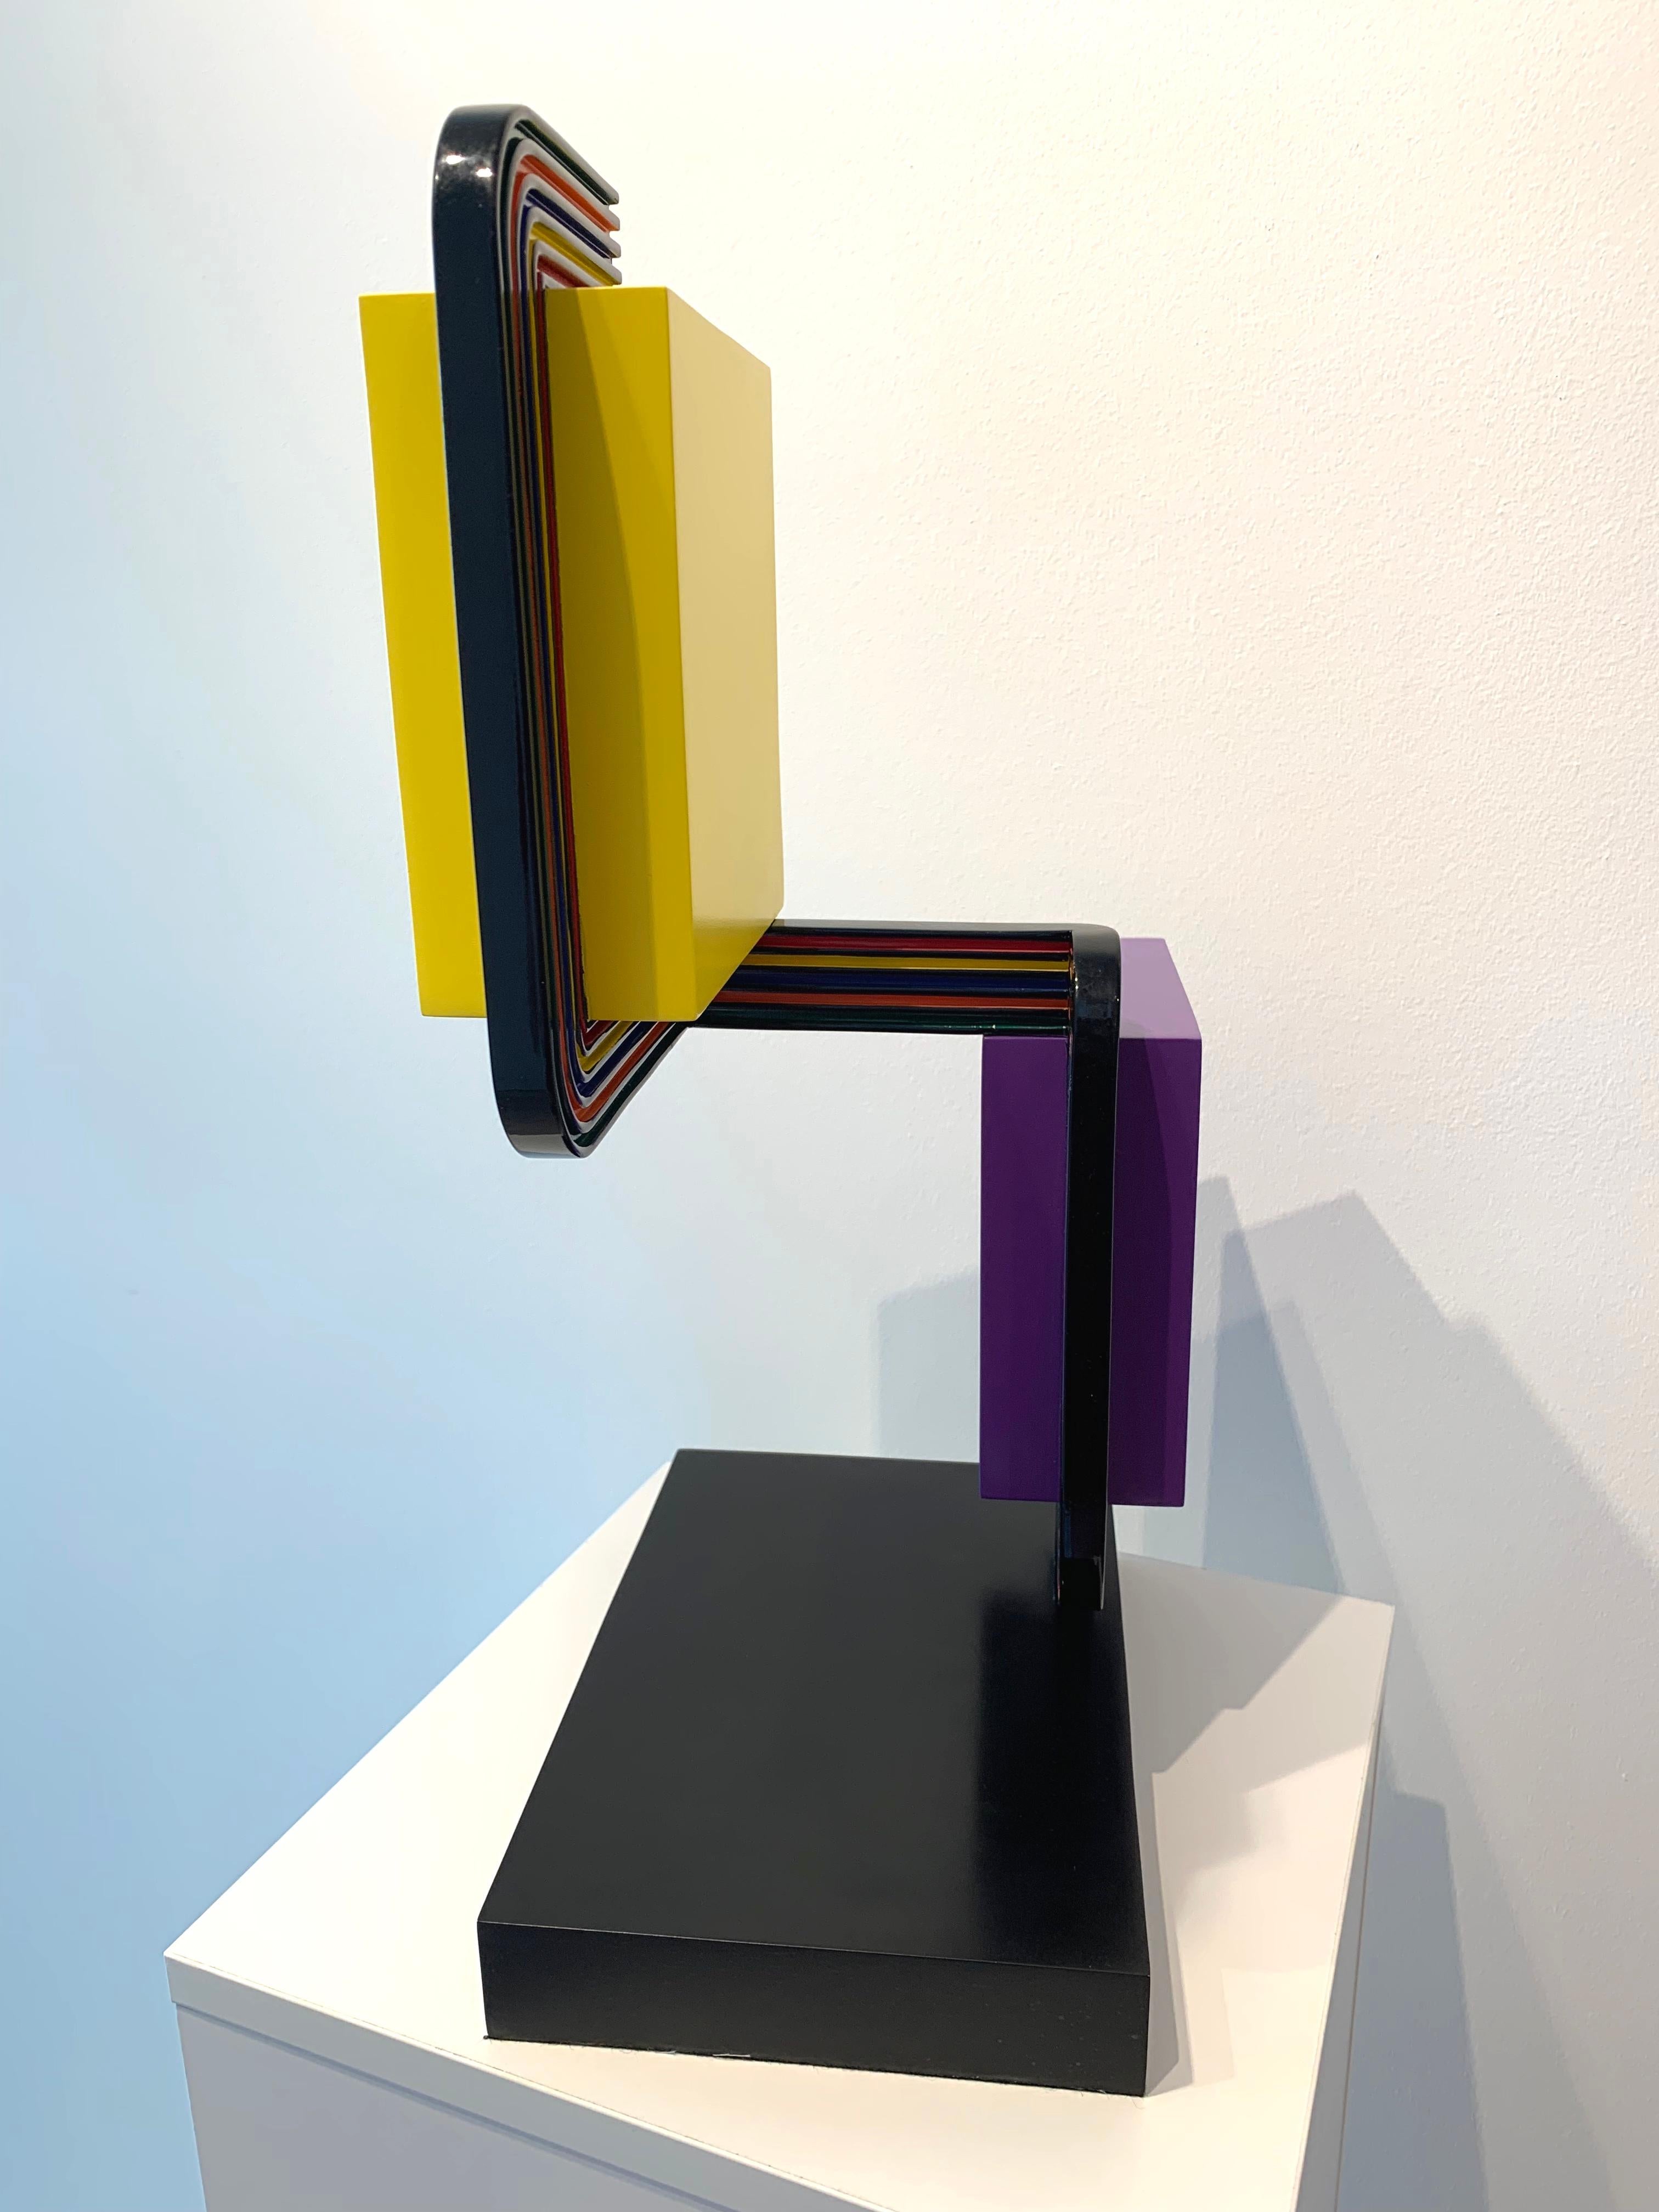 2022
Bronze
18 1/2 x 11 1/4 x 7 1/2 in. (47 x 28.6 x 19.1 cm)
Unique en son genre
Signé, daté et numéroté, en bas

L'art d'Osvaldo Mariscotti est un art des Fundamente : la couleur, la ligne et les possibilités inhérentes à leur variation et à leur